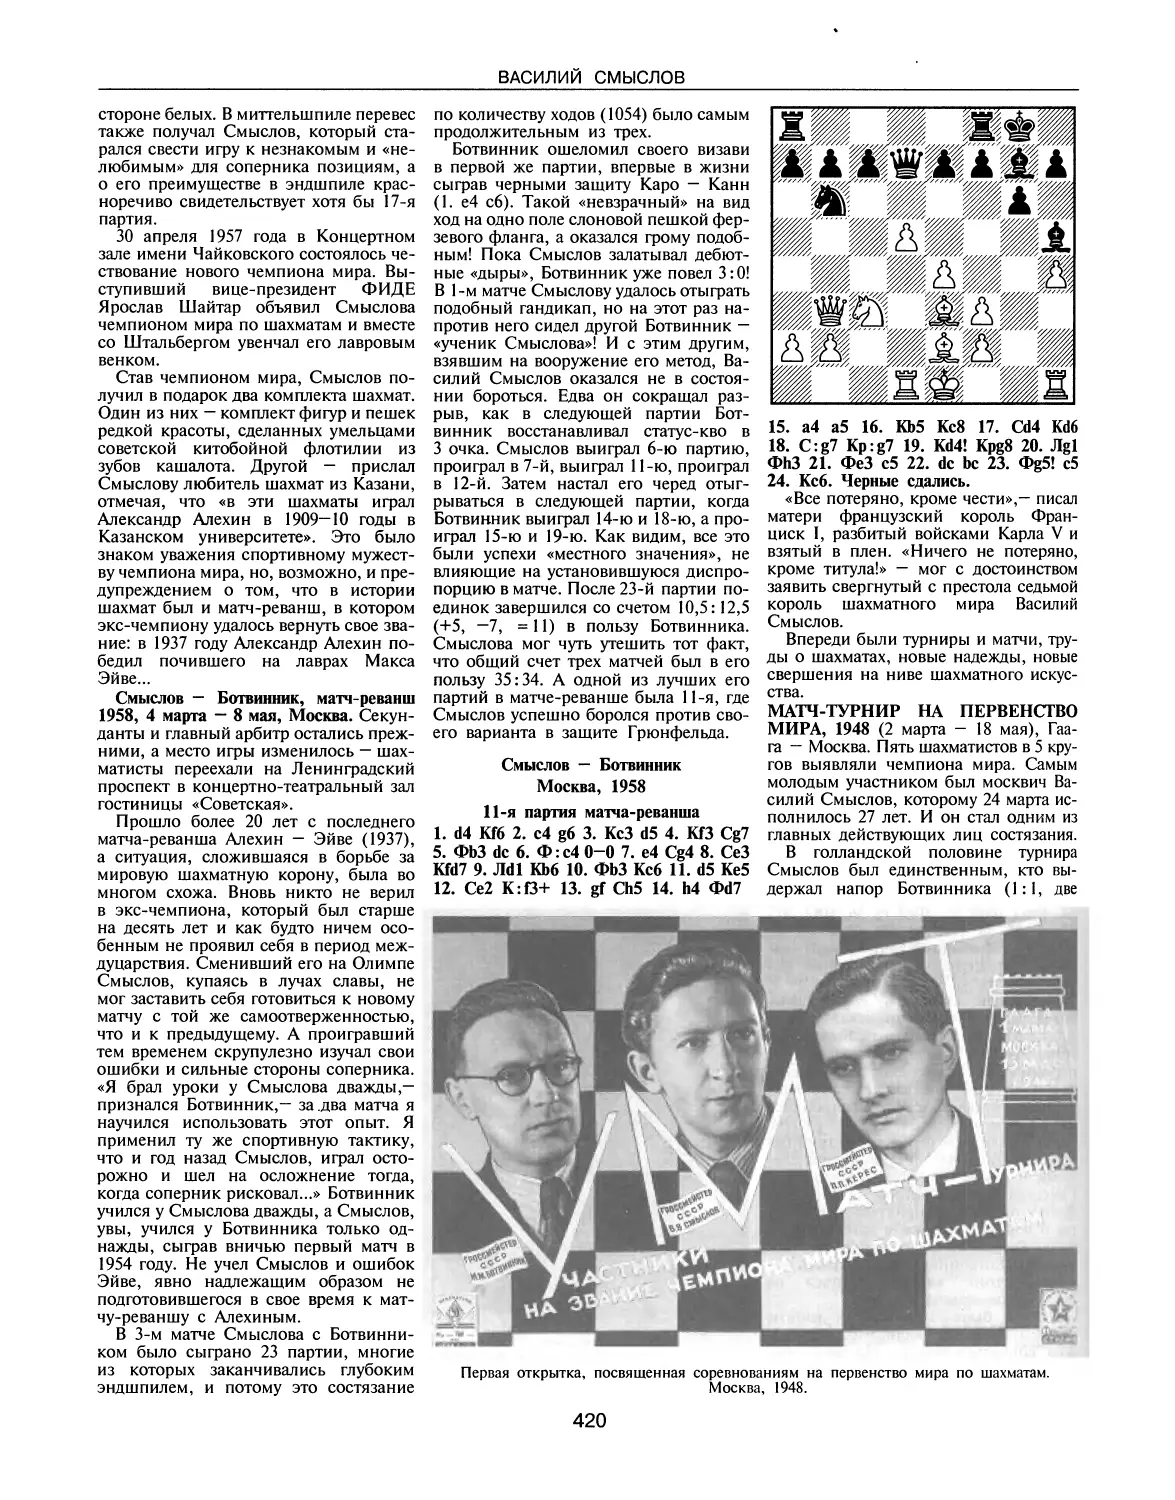 Смыслов — Ботвинник, 1958, матч-реванш
Матч-турнир на первенство мира, 1948